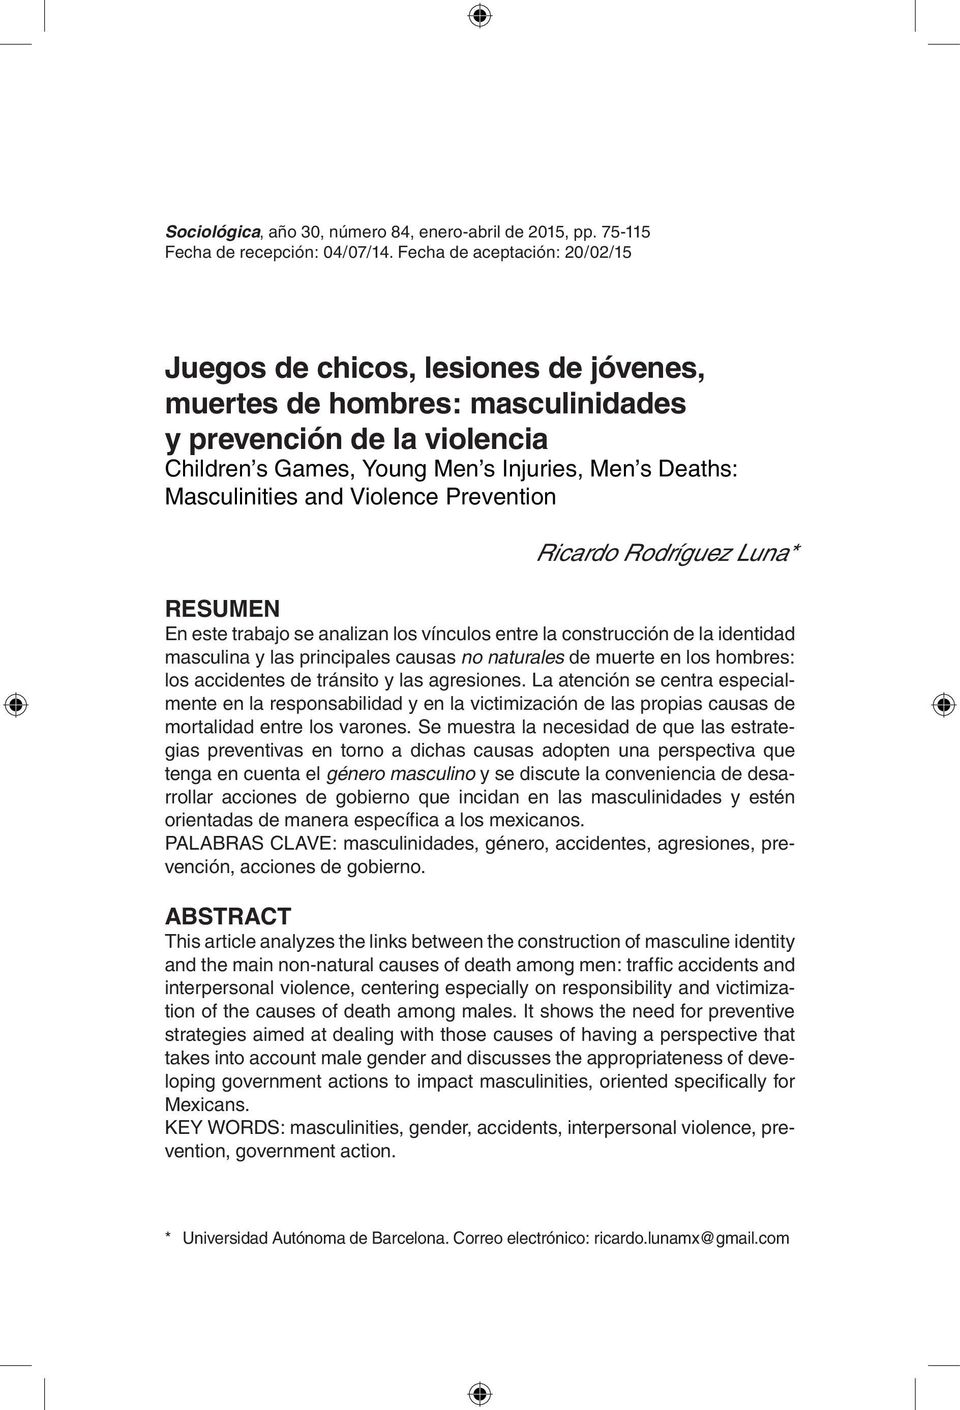 Masculinities and Violence Prevention Ricardo Rodríguez Luna* RESUMEN En este trabajo se analizan los vínculos entre la construcción de la identidad masculina y las principales causas no naturales de